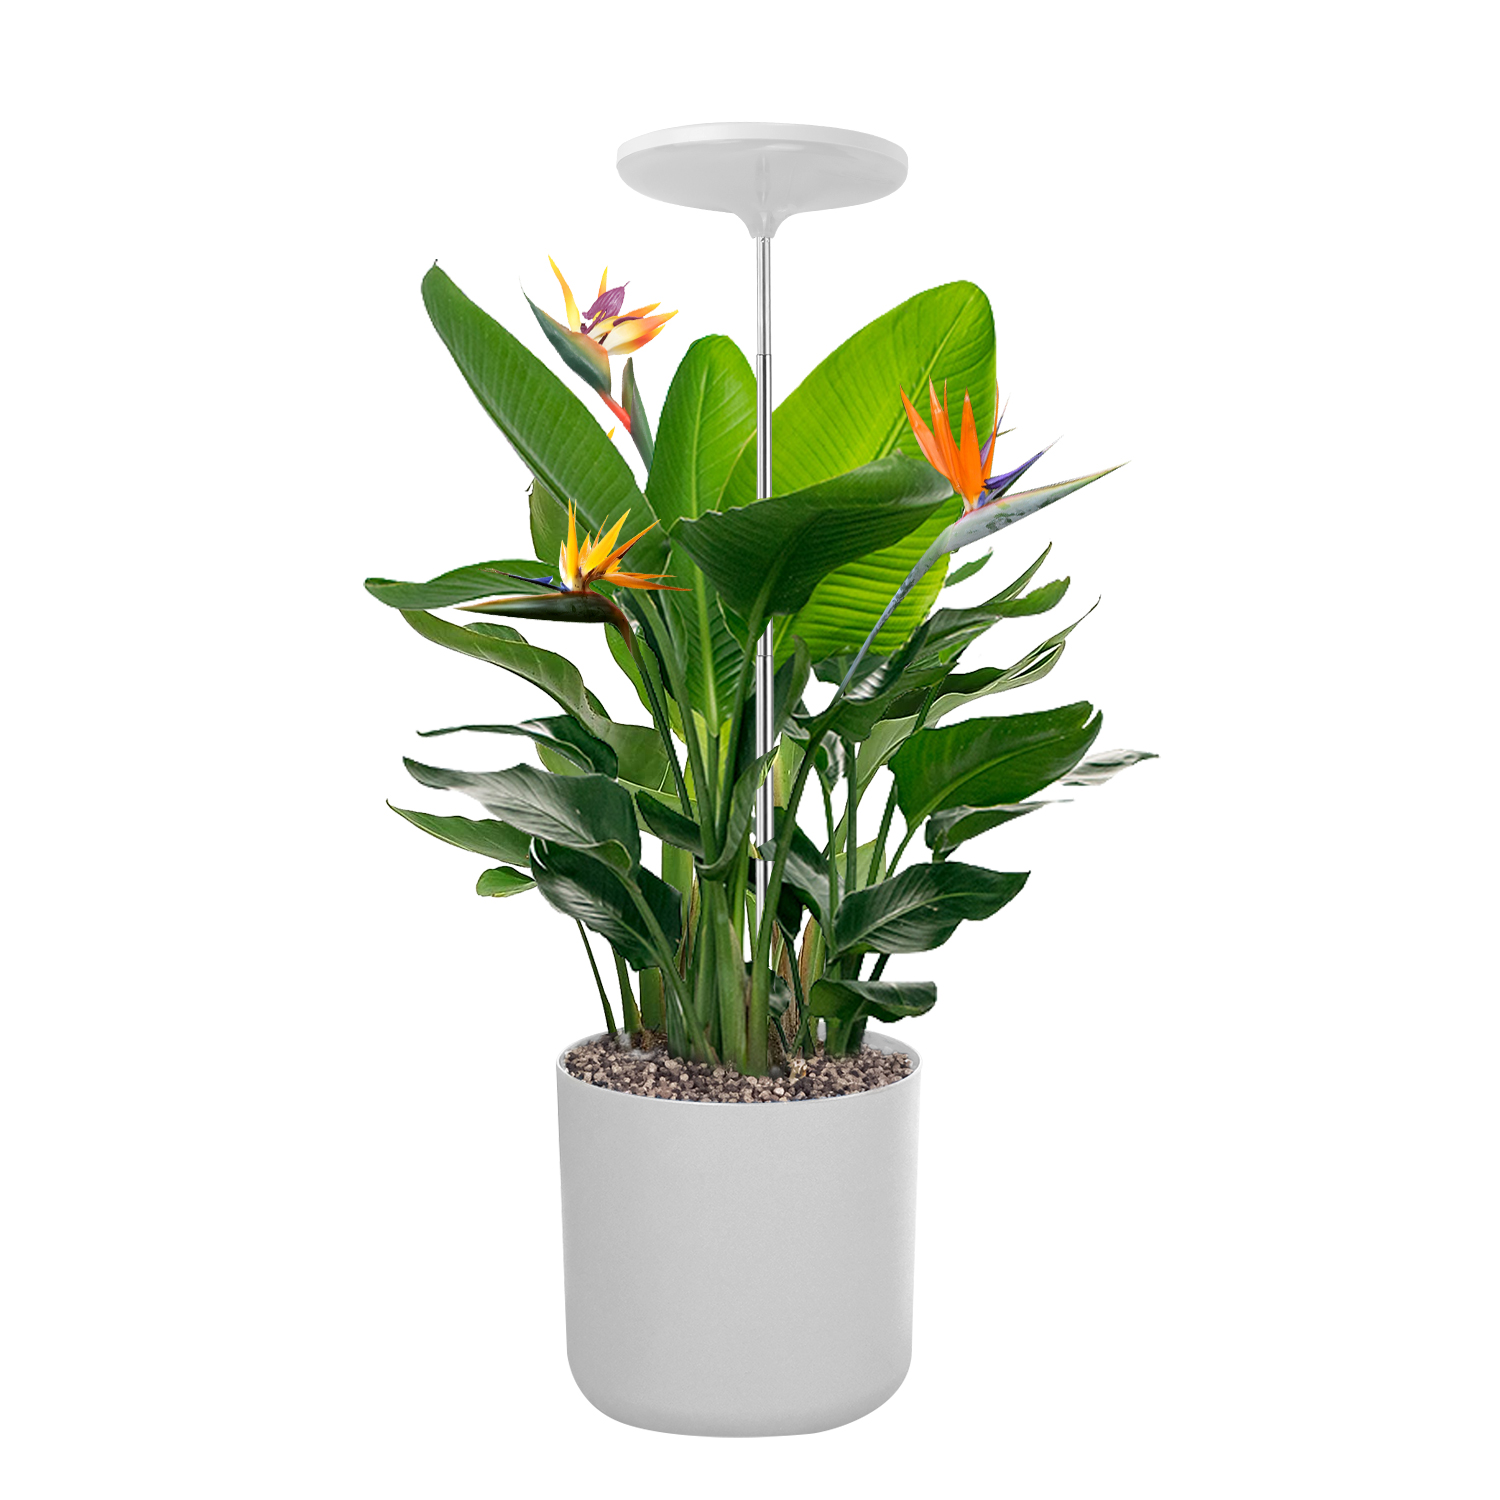 TG004 Ներքին Smart Plant Grow Light Լամպ Garden Grow Lights Դեկորատիվ բույսերի լույսեր